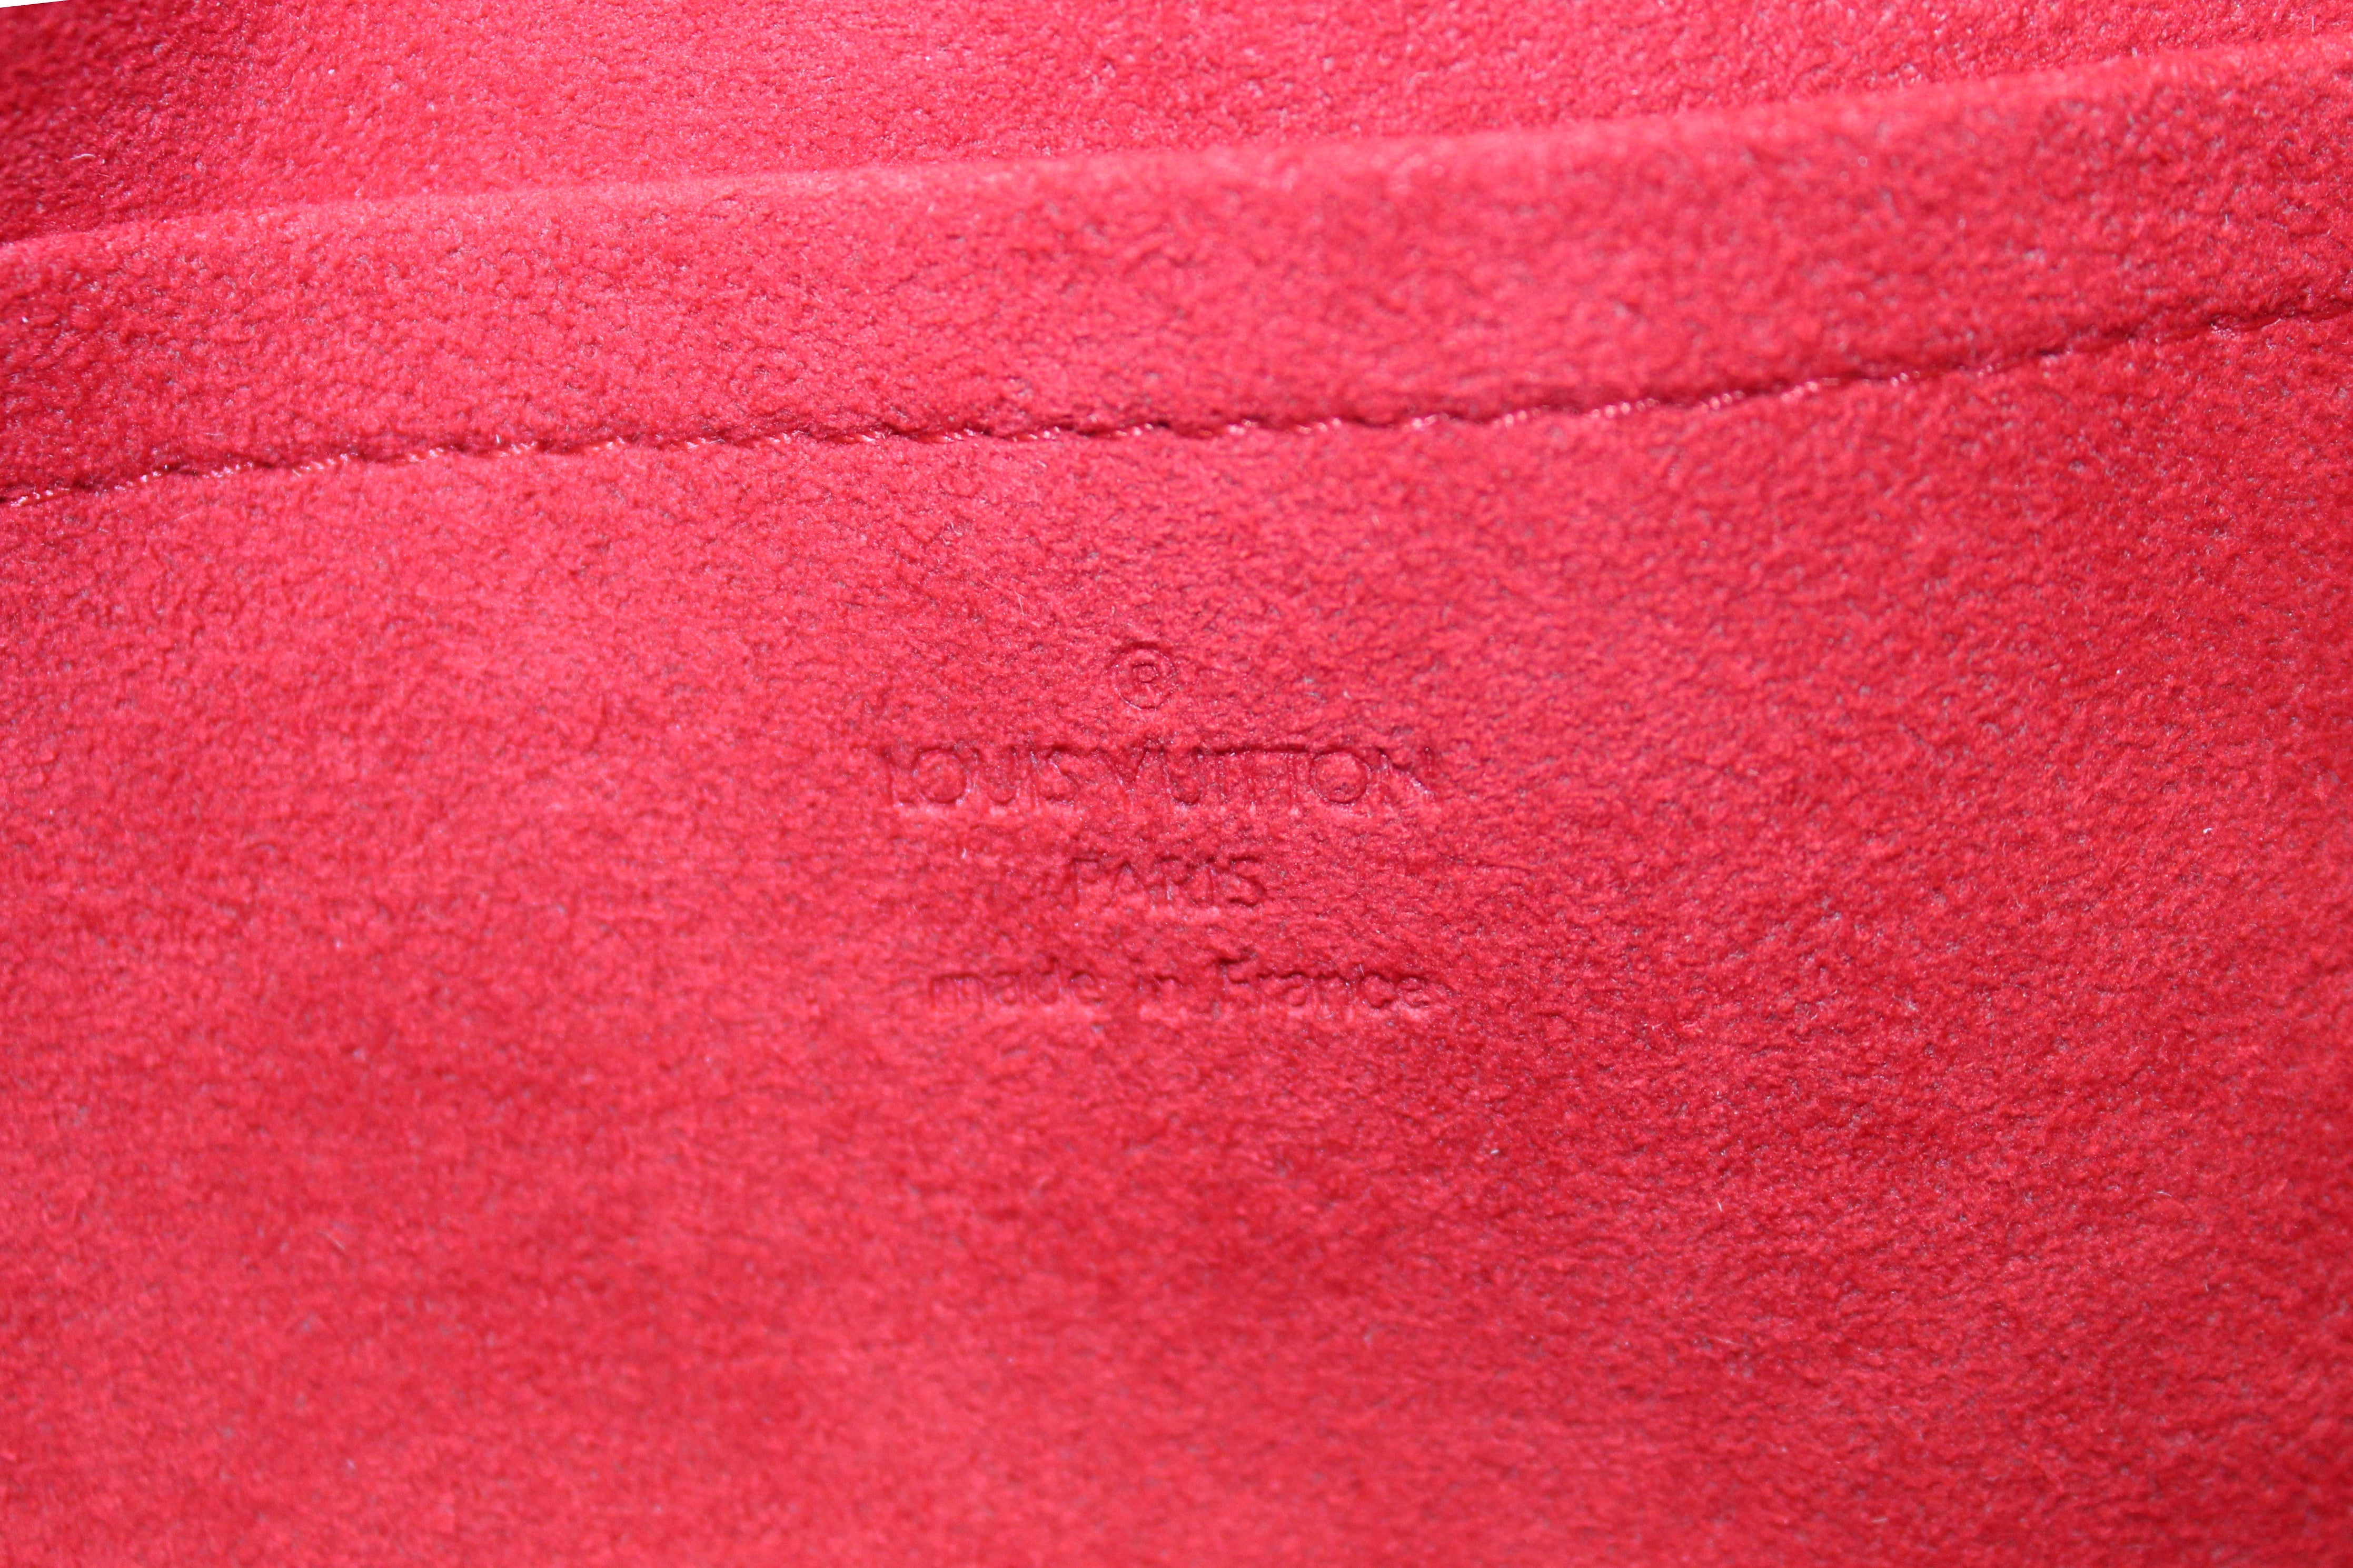 Authentic Louis Vuitton Damier Ebene Canvas Ravello PM Bag